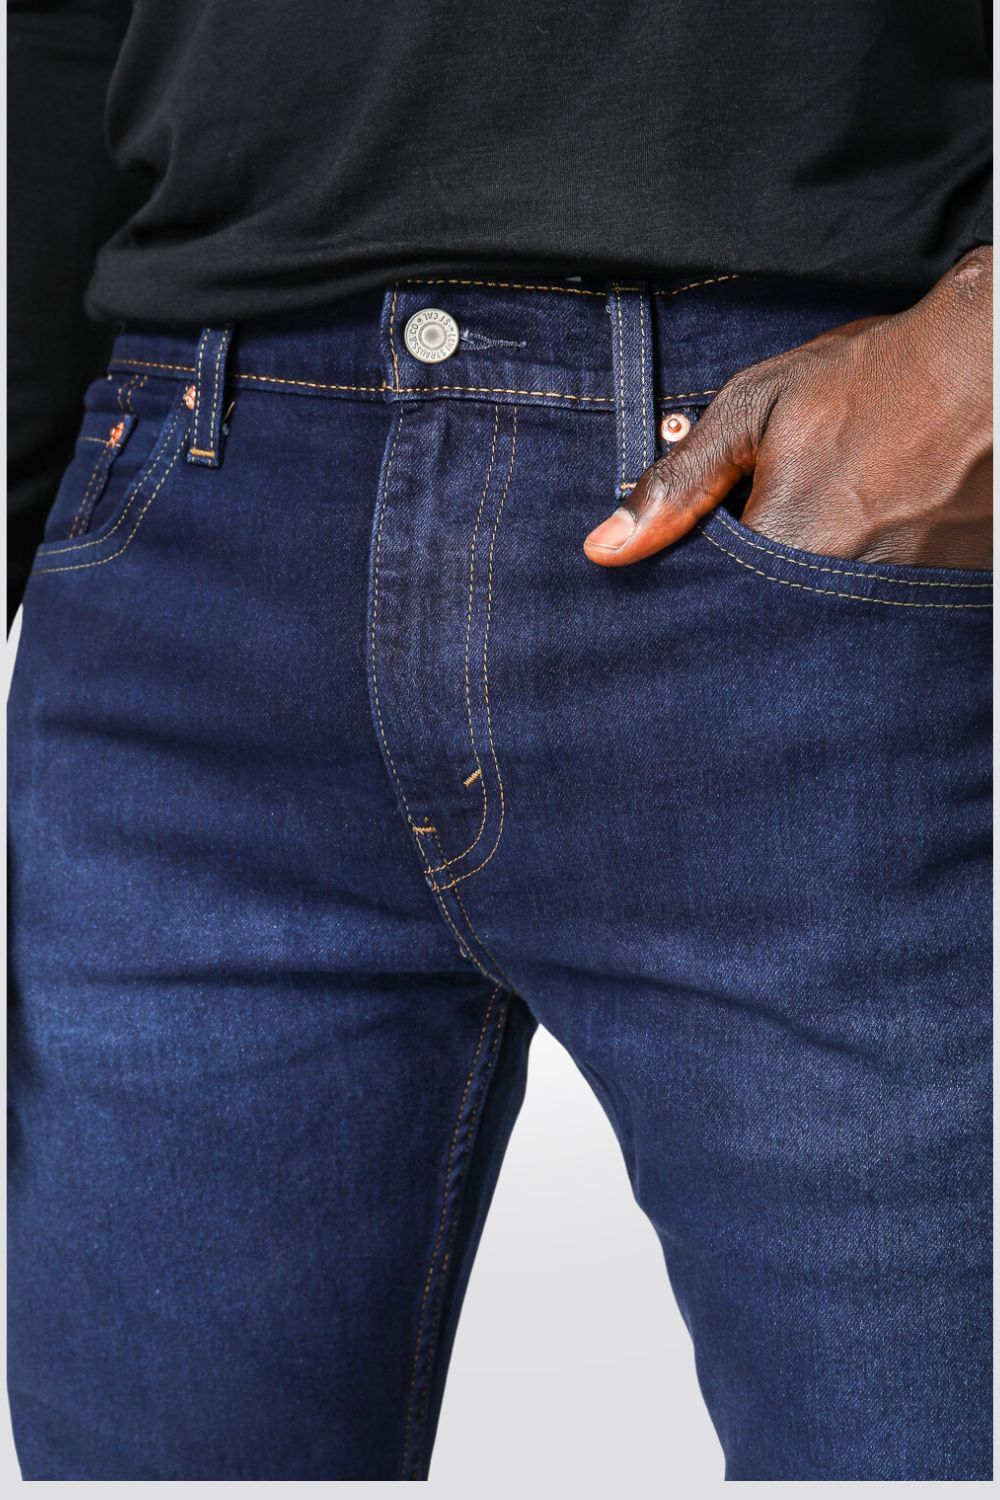 ג'ינס לגברים INDIGO-POCKETS בצבע כחול כהה